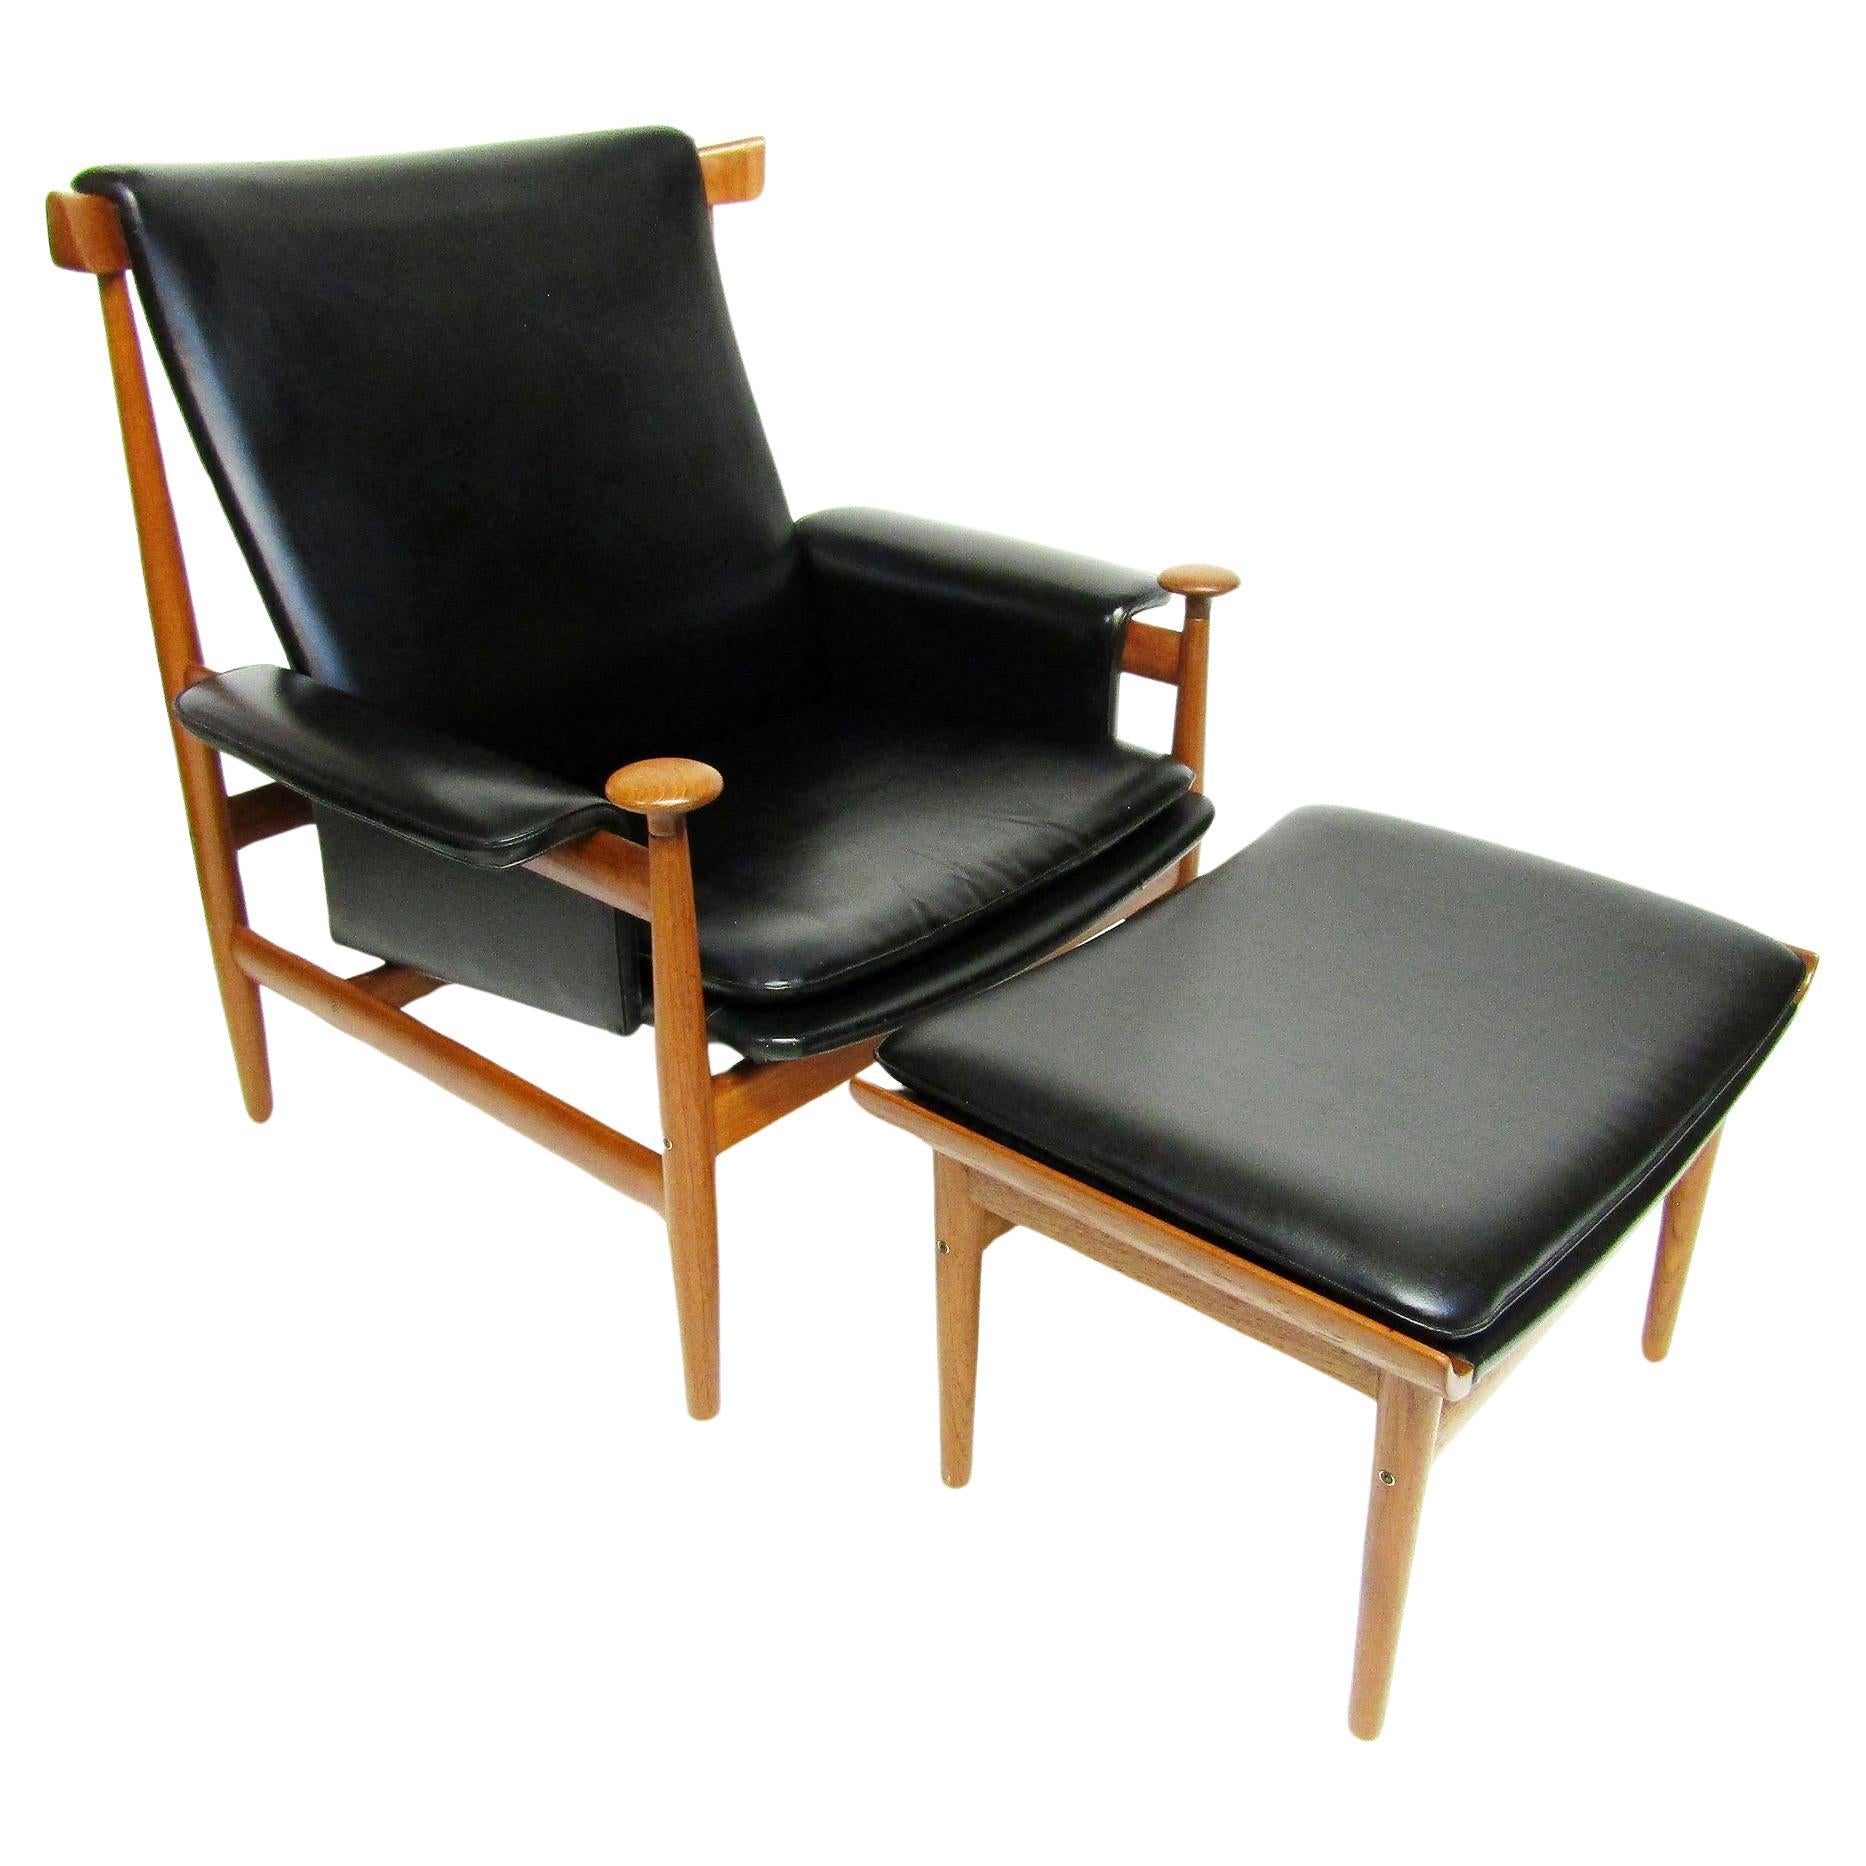 1960s Danish Bwana Chair & Ottoman By Finn Juhl In Teak & Skai For Sale